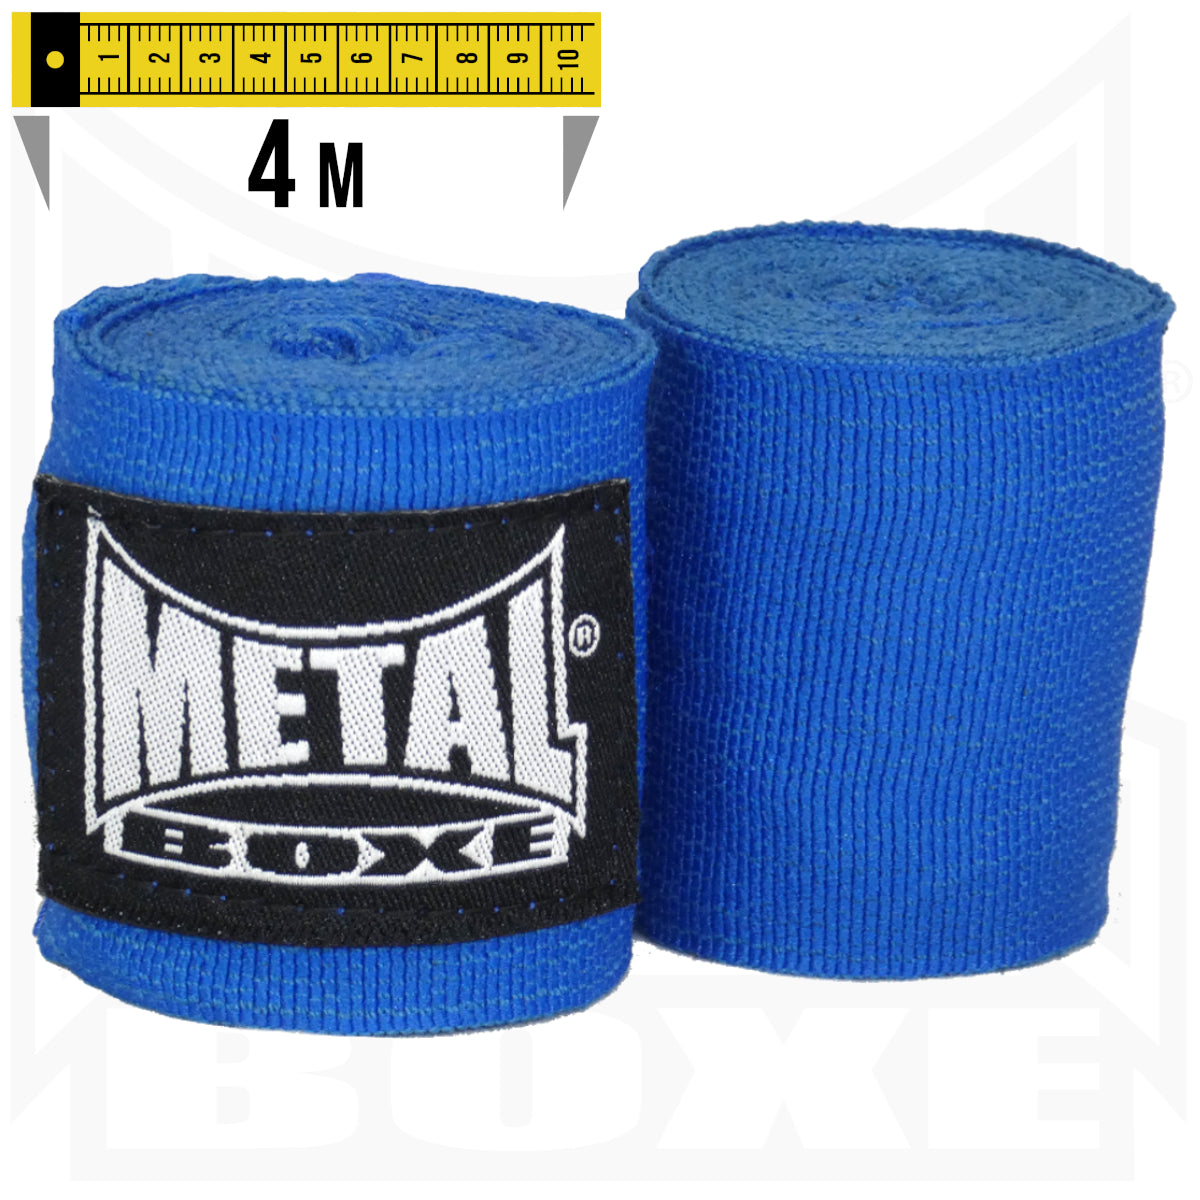 Boxbandagen Metal Boxe - Blau - 4 m